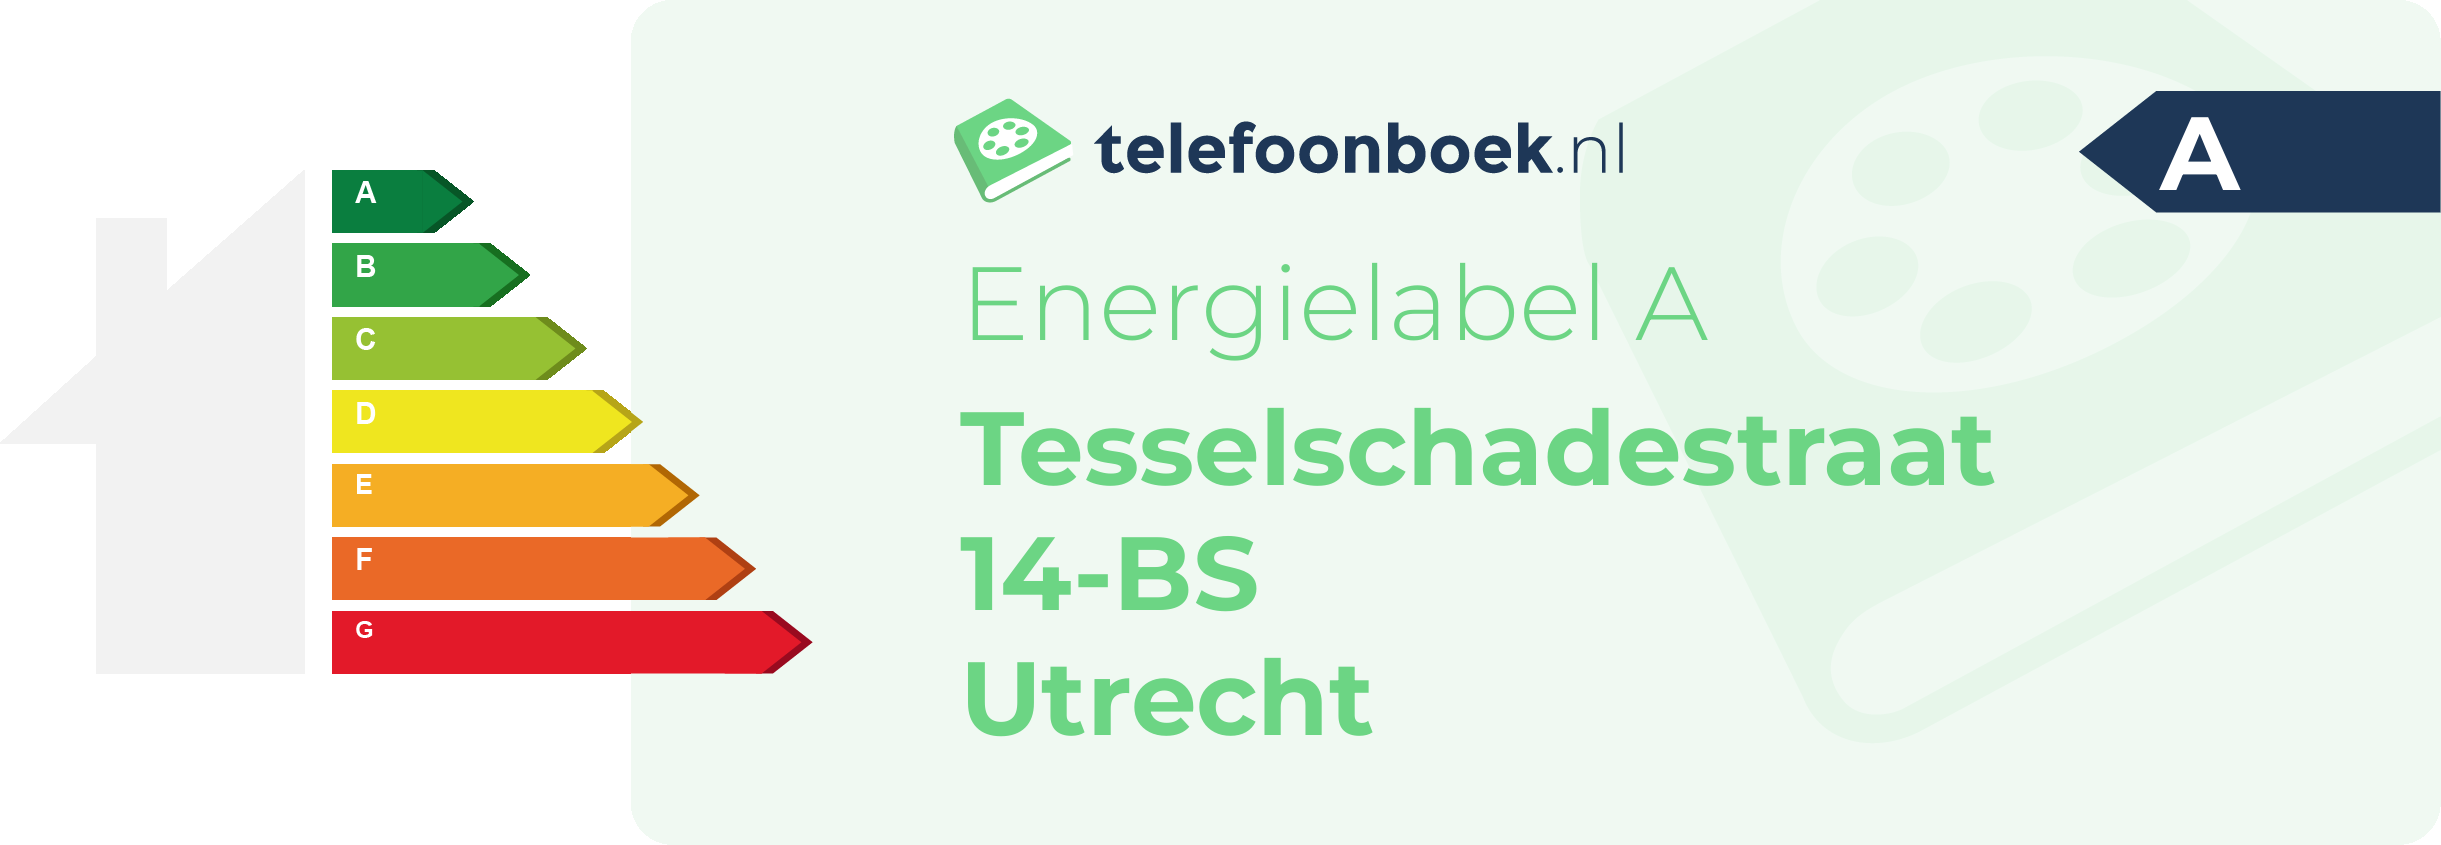 Energielabel Tesselschadestraat 14-BS Utrecht